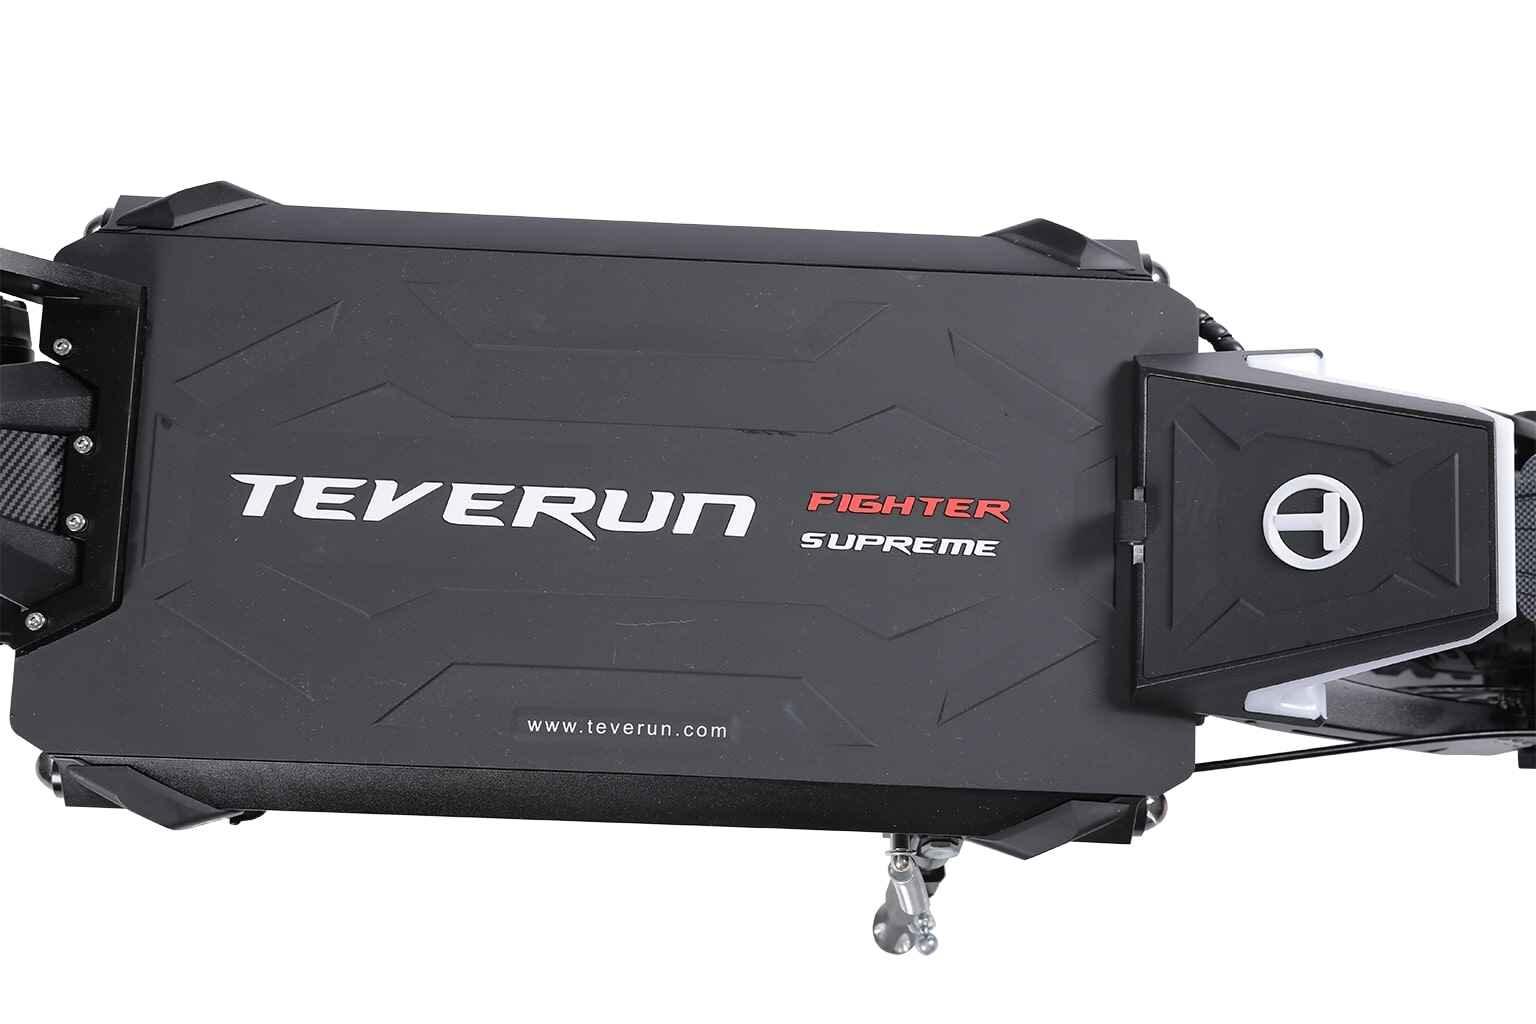 Trottinette électrique Teverun Fighter Suprem Plus avec plateau